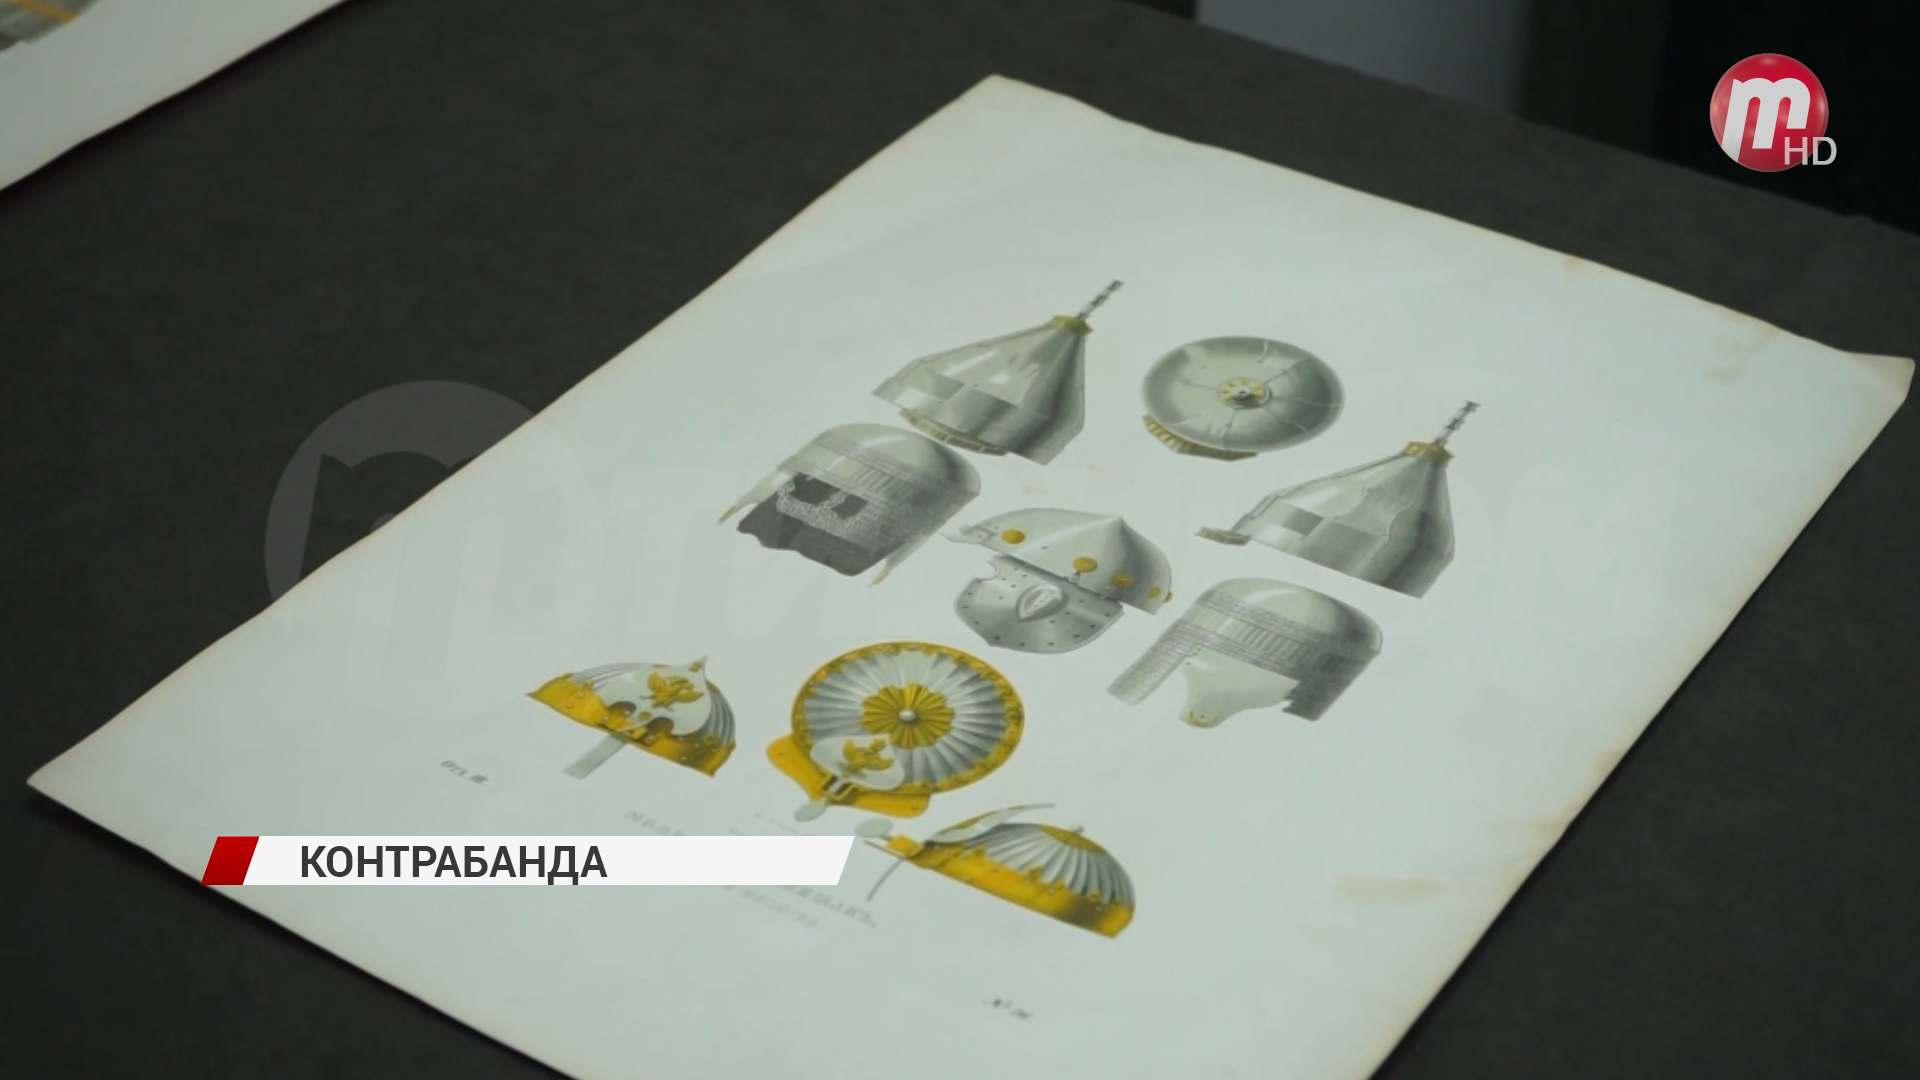 Объект исторической ценности стоимостью в миллион долларов передали в национальный музей Бурятии